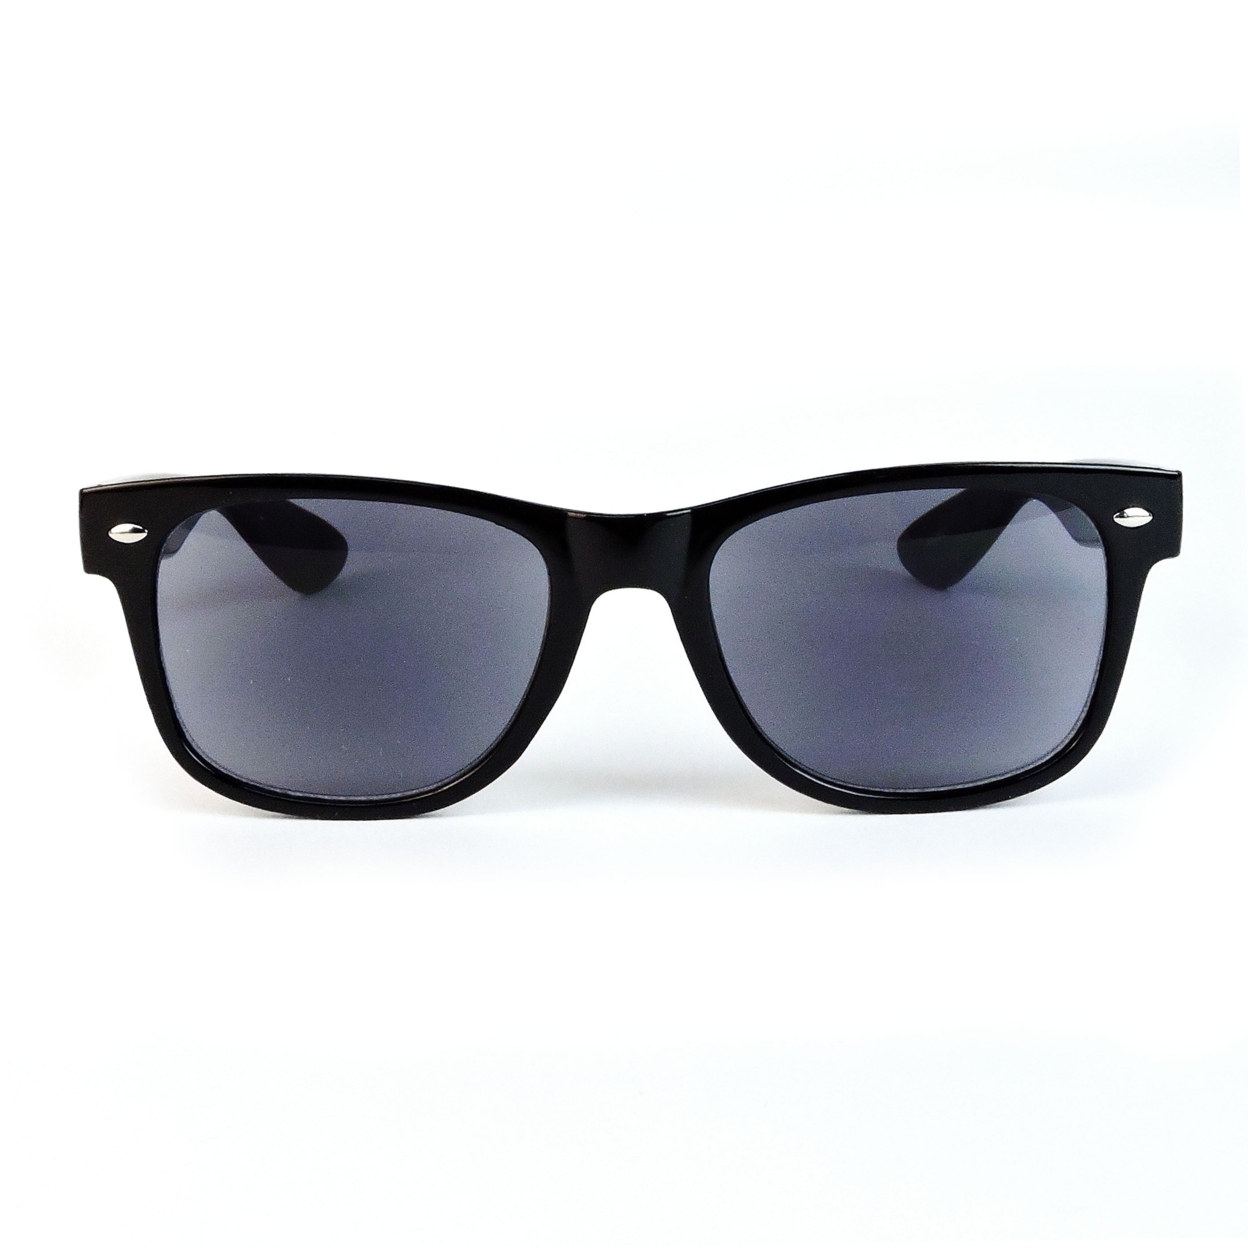 Sun Readers Full Lens Classic Frame 80's Retro Style Reading Sunglasses - Black, +2.50